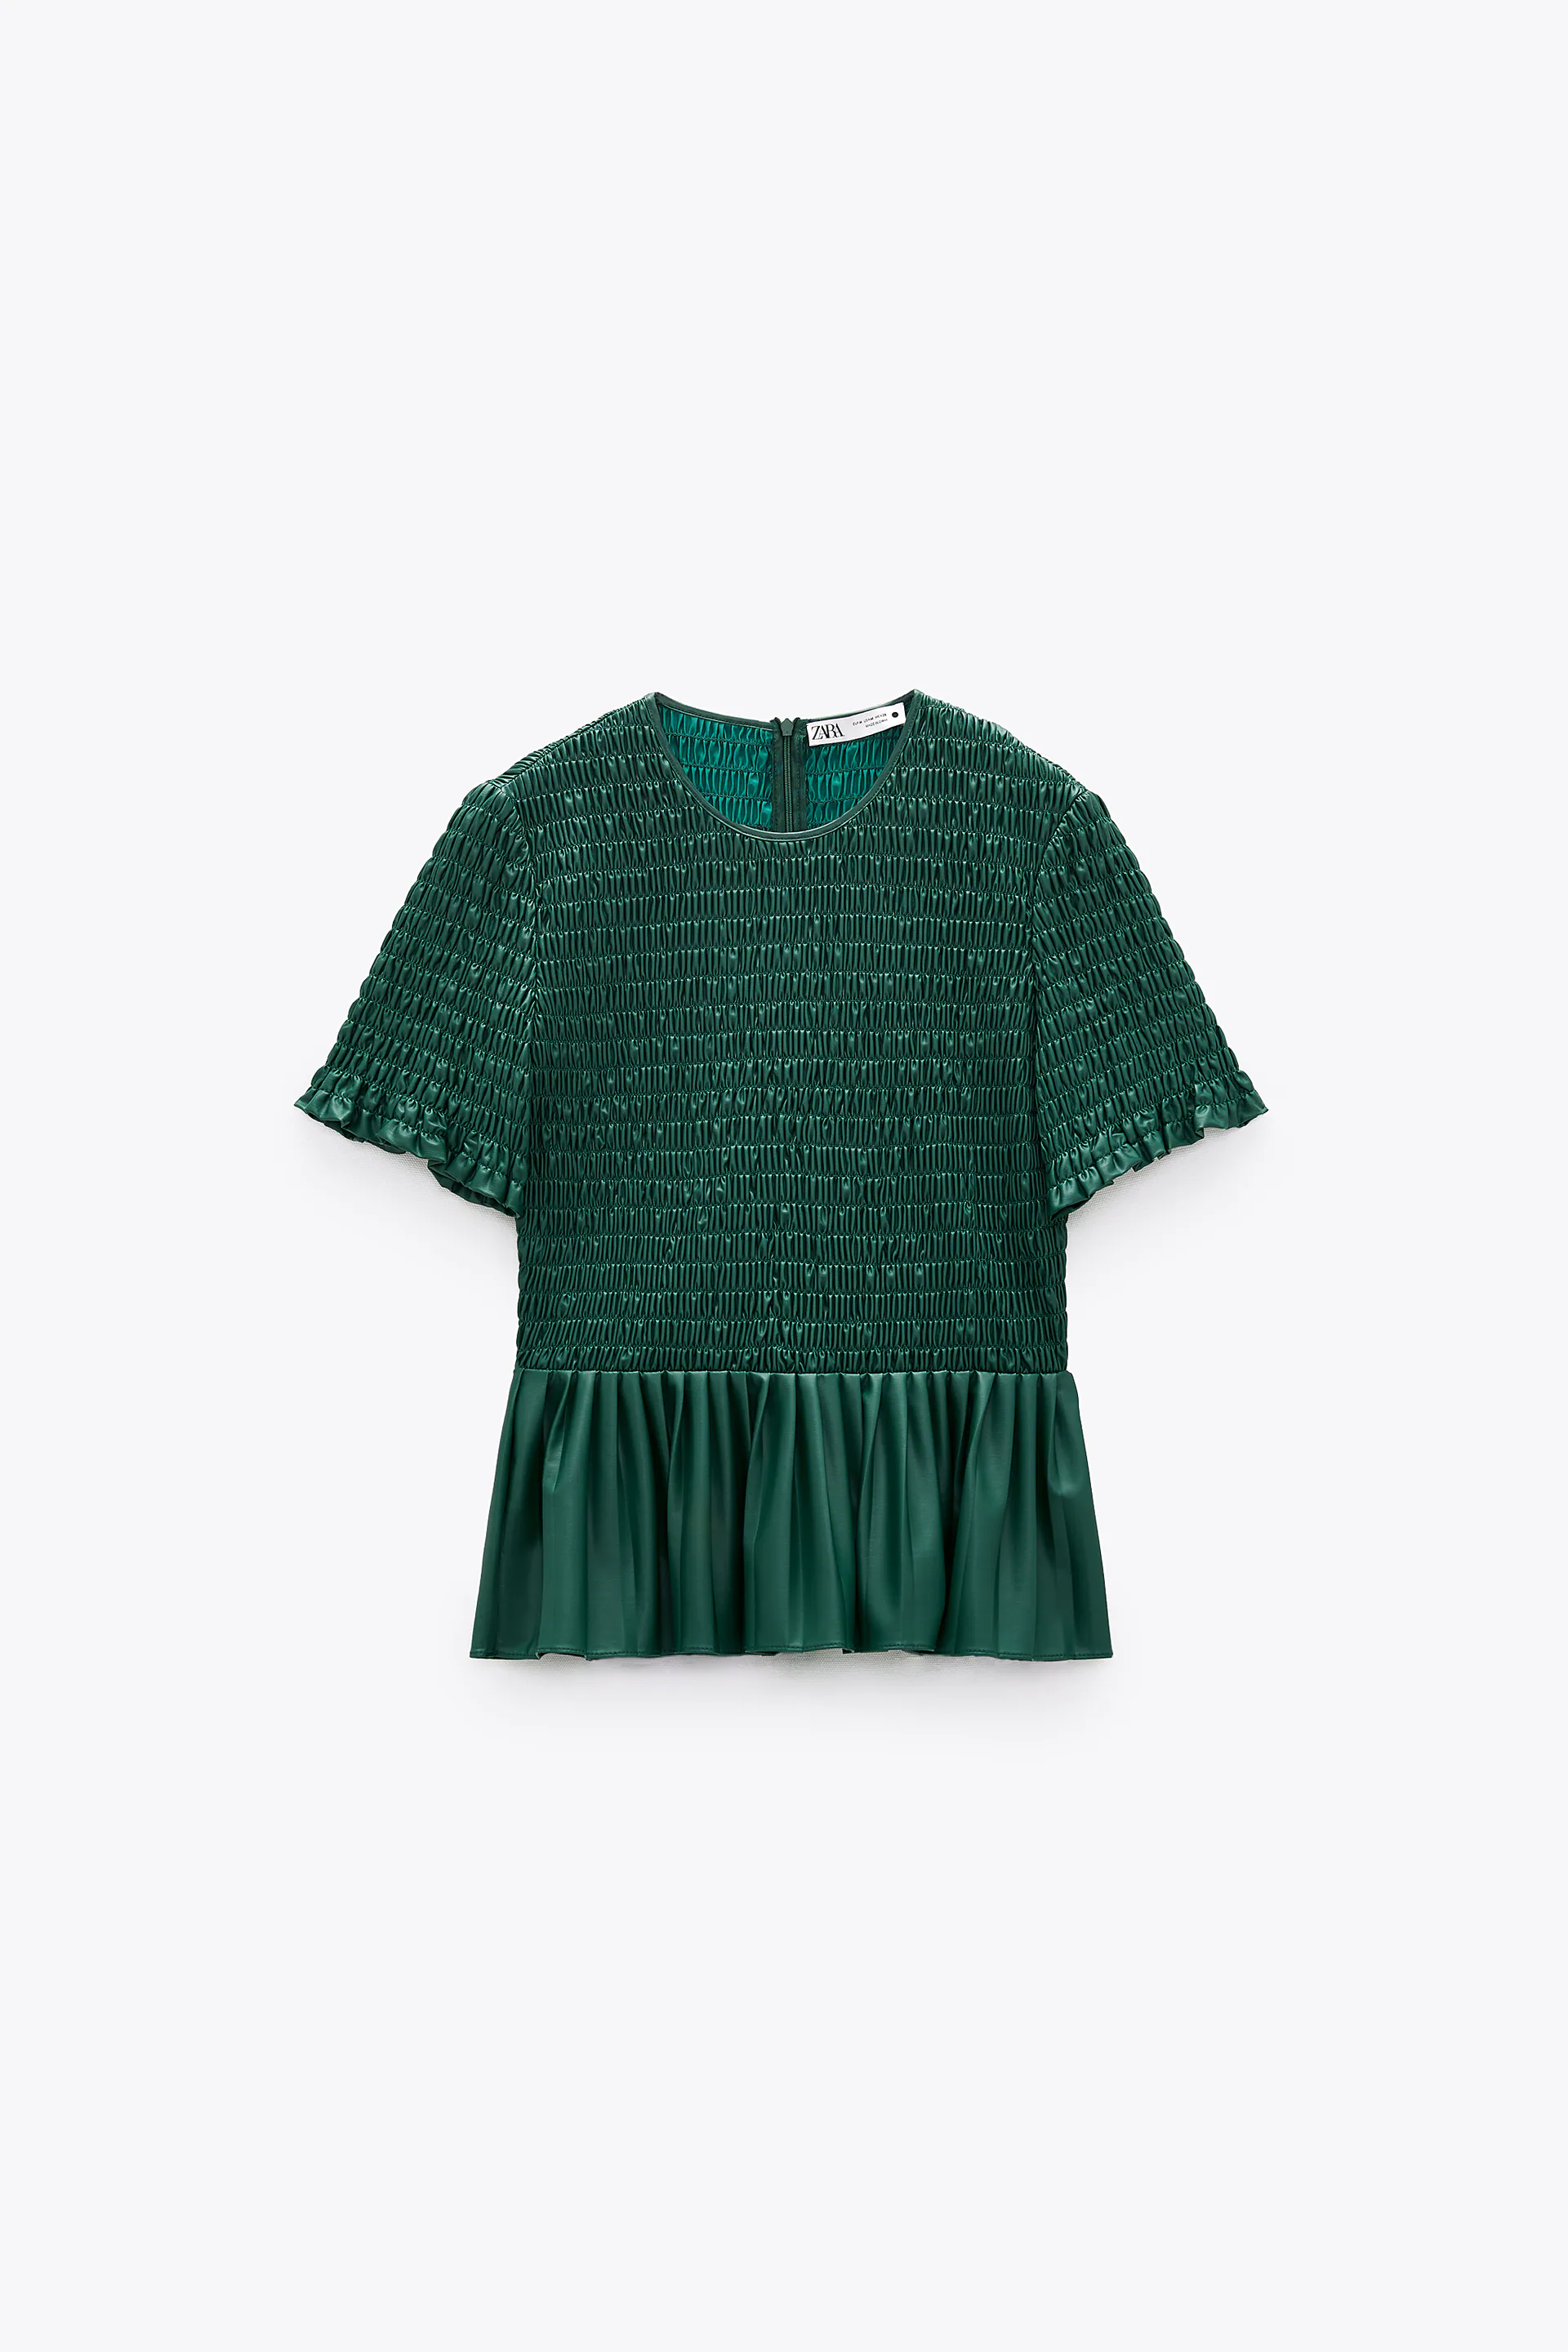 bluza verde zara cu elastic si pliuri [5]